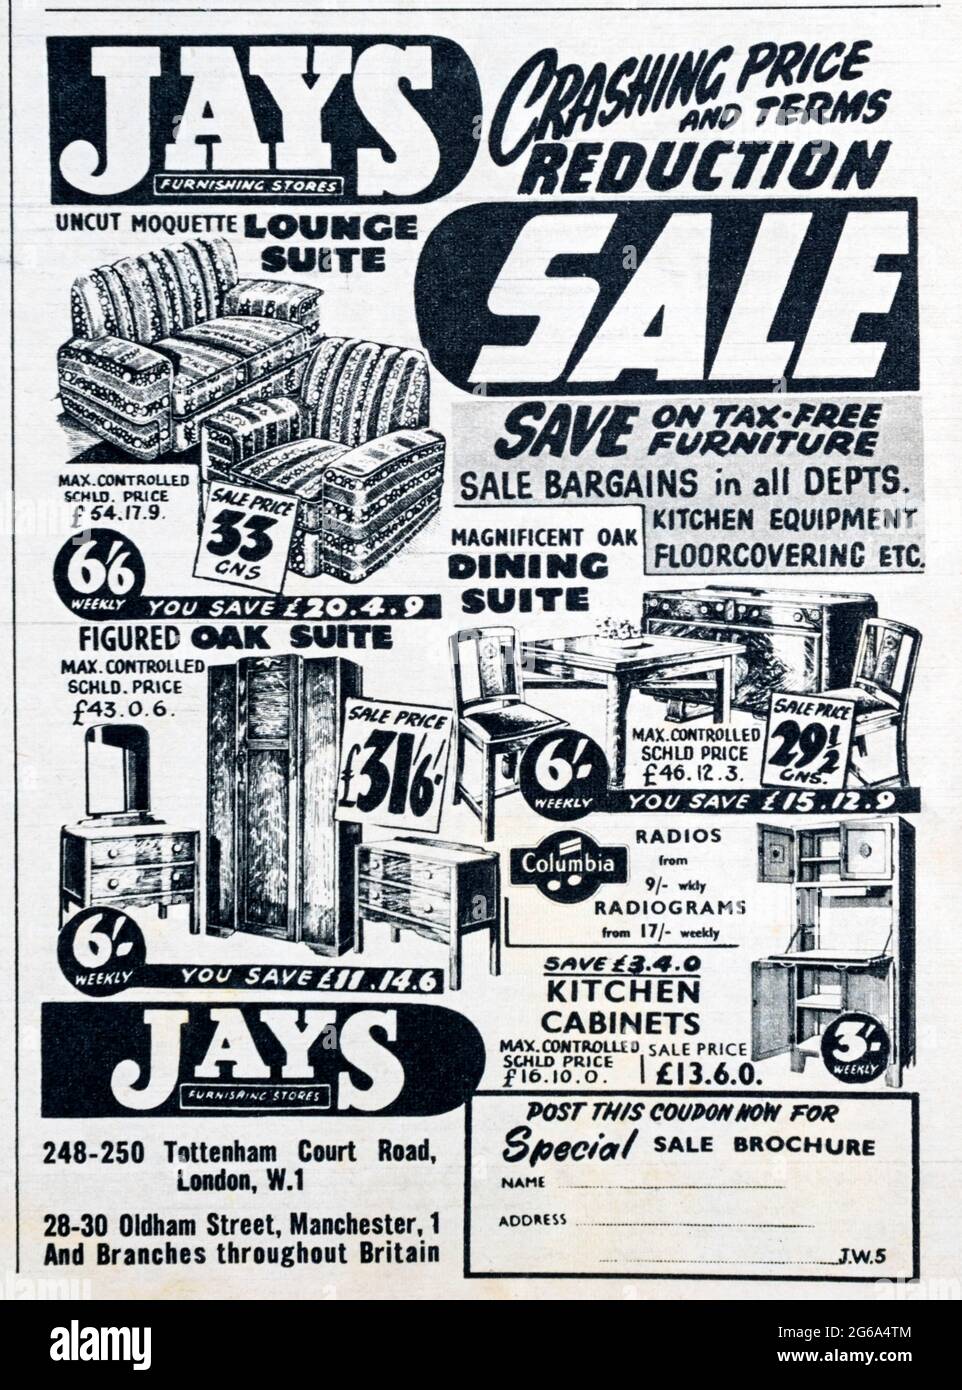 Une publicité dans un magazine des années 1950 pour Jays Furnishing Stores. Banque D'Images